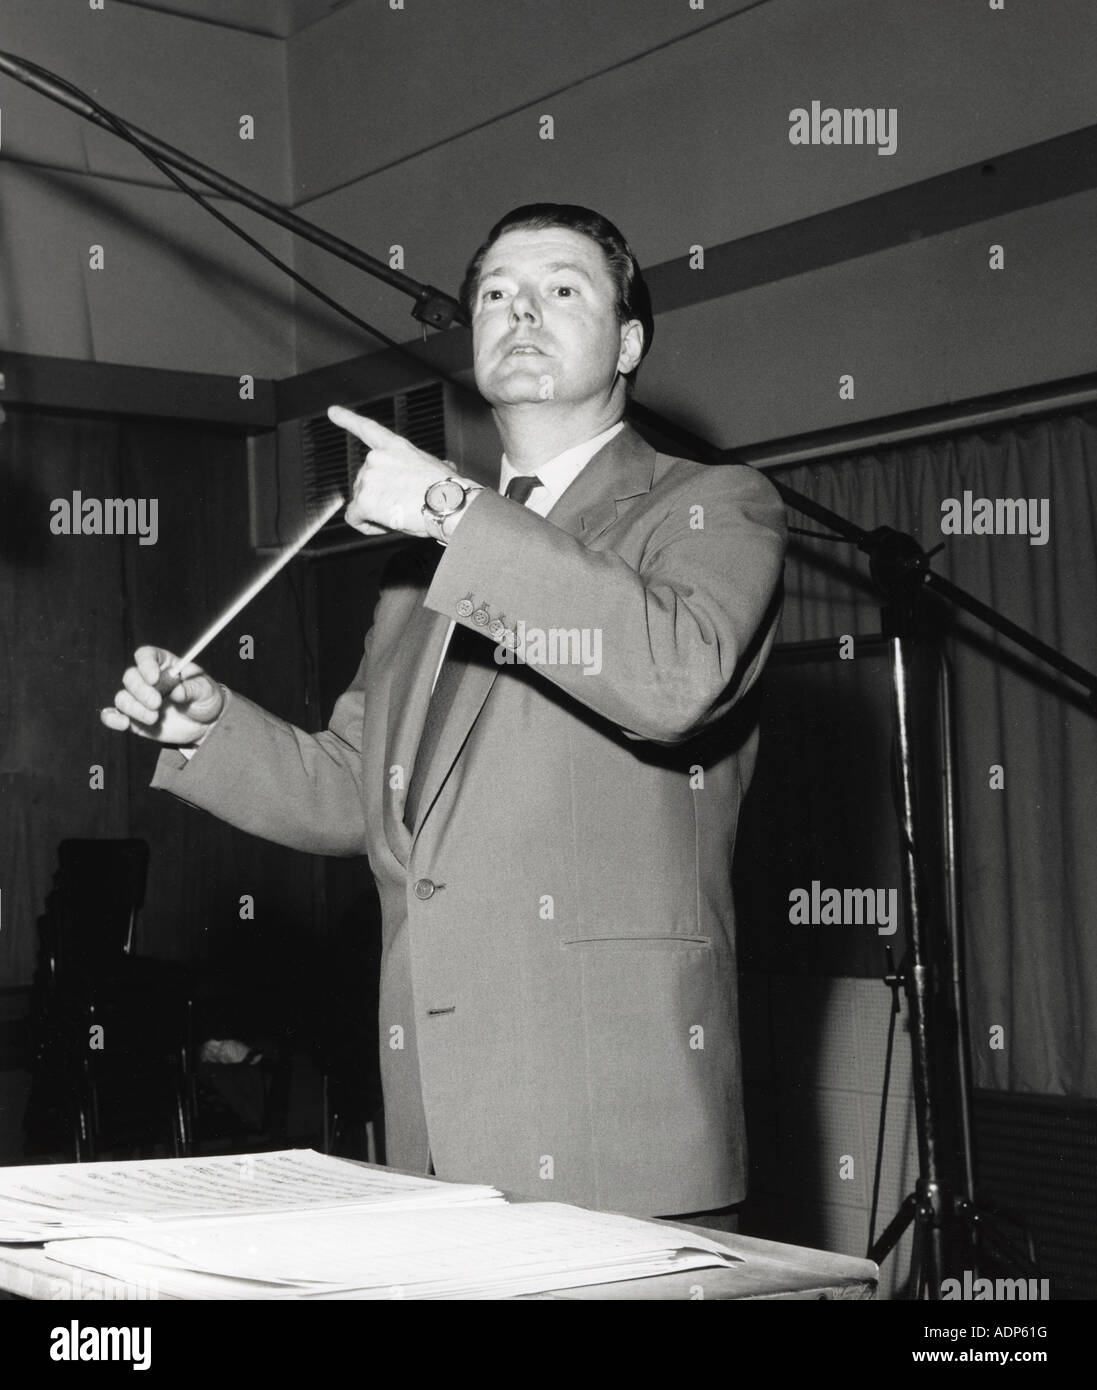 FRANK CHACKSFIELD - UK luz director orquestal de 1914 a 1995 en un estudio de grabación cerca de 1960 Foto de stock